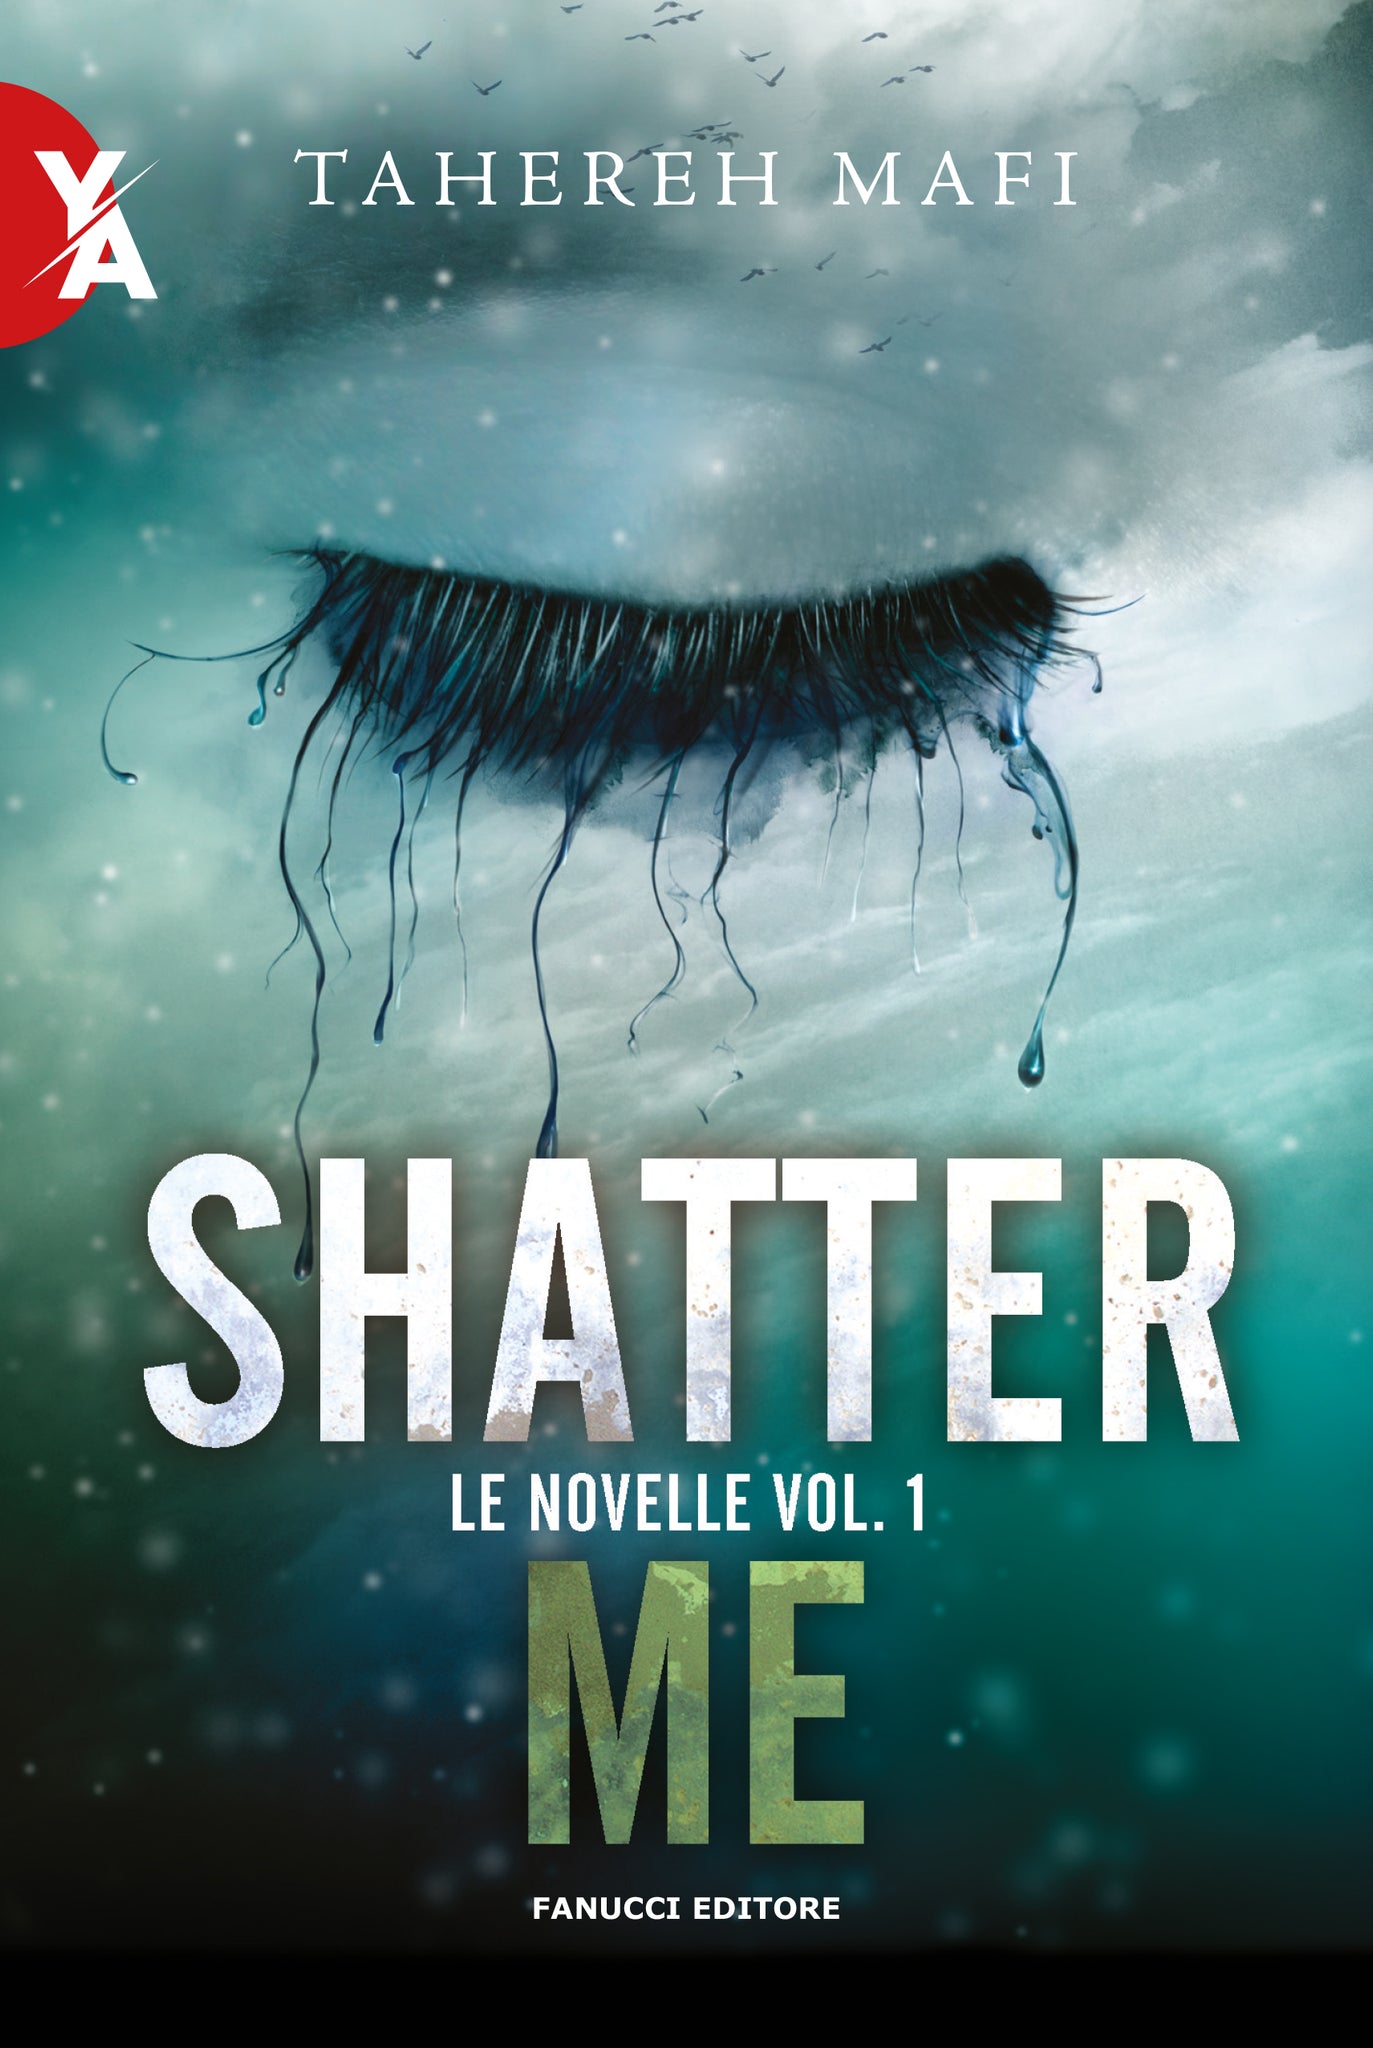 Shatter Me – Le novelle vol. 1